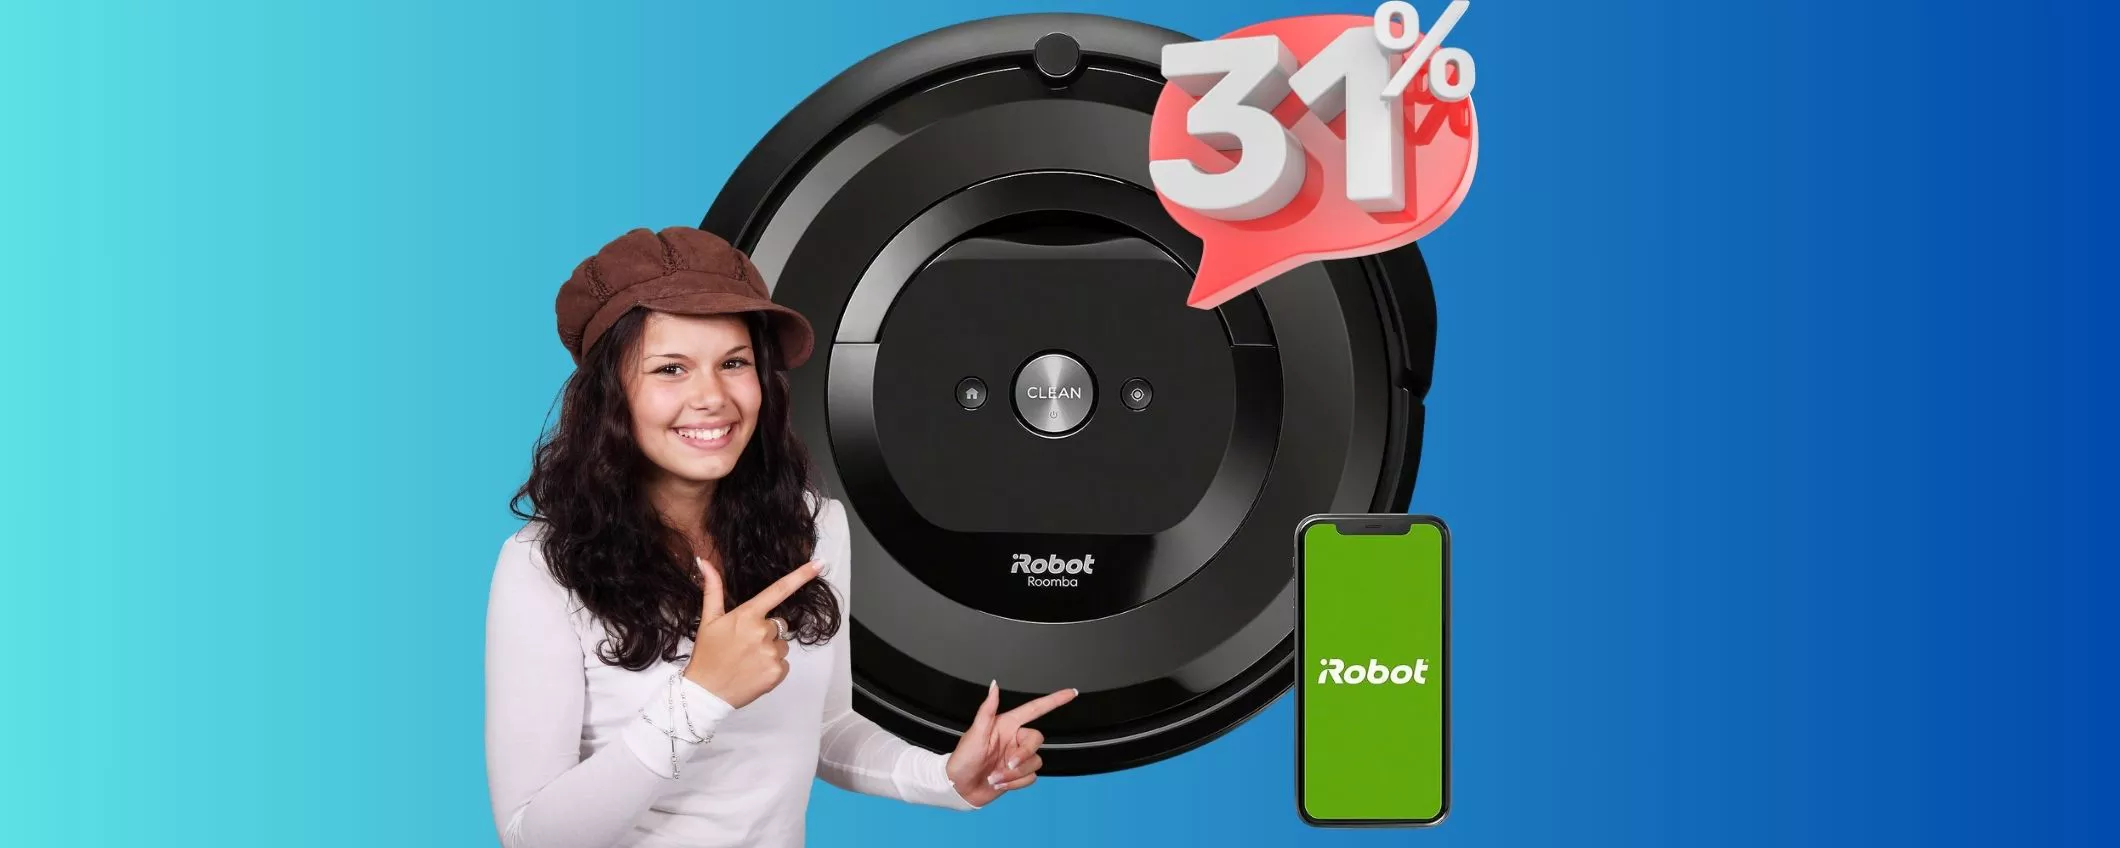 iRobot Roomba: le pulizie non saranno più le stesse! SCONTONE!